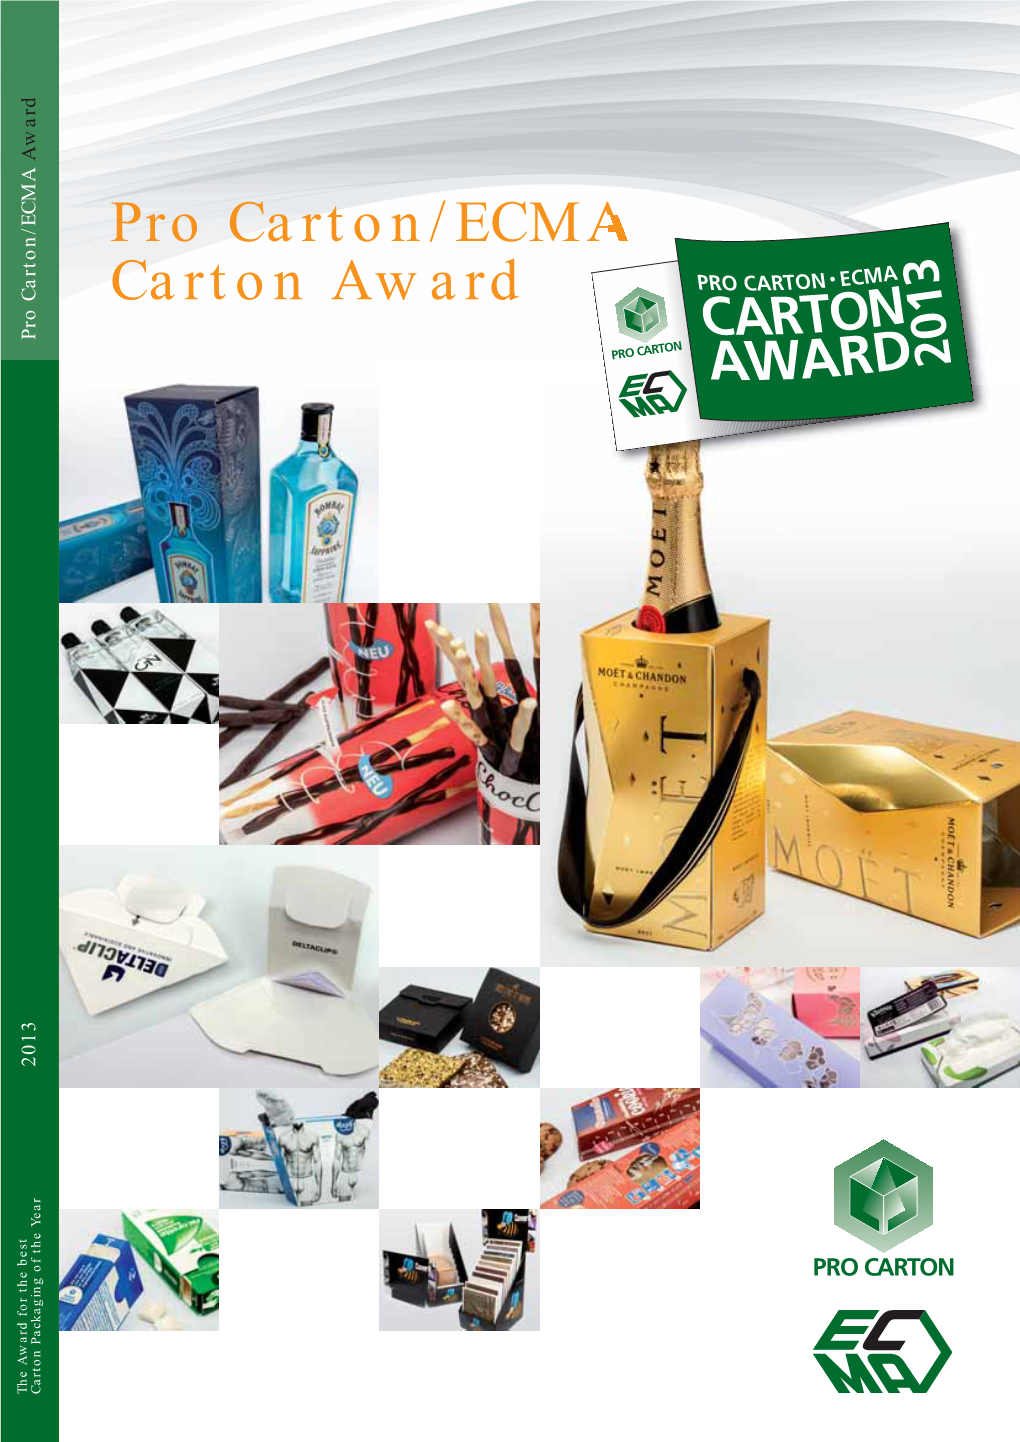 Pro Carton/ECMA Carton Award